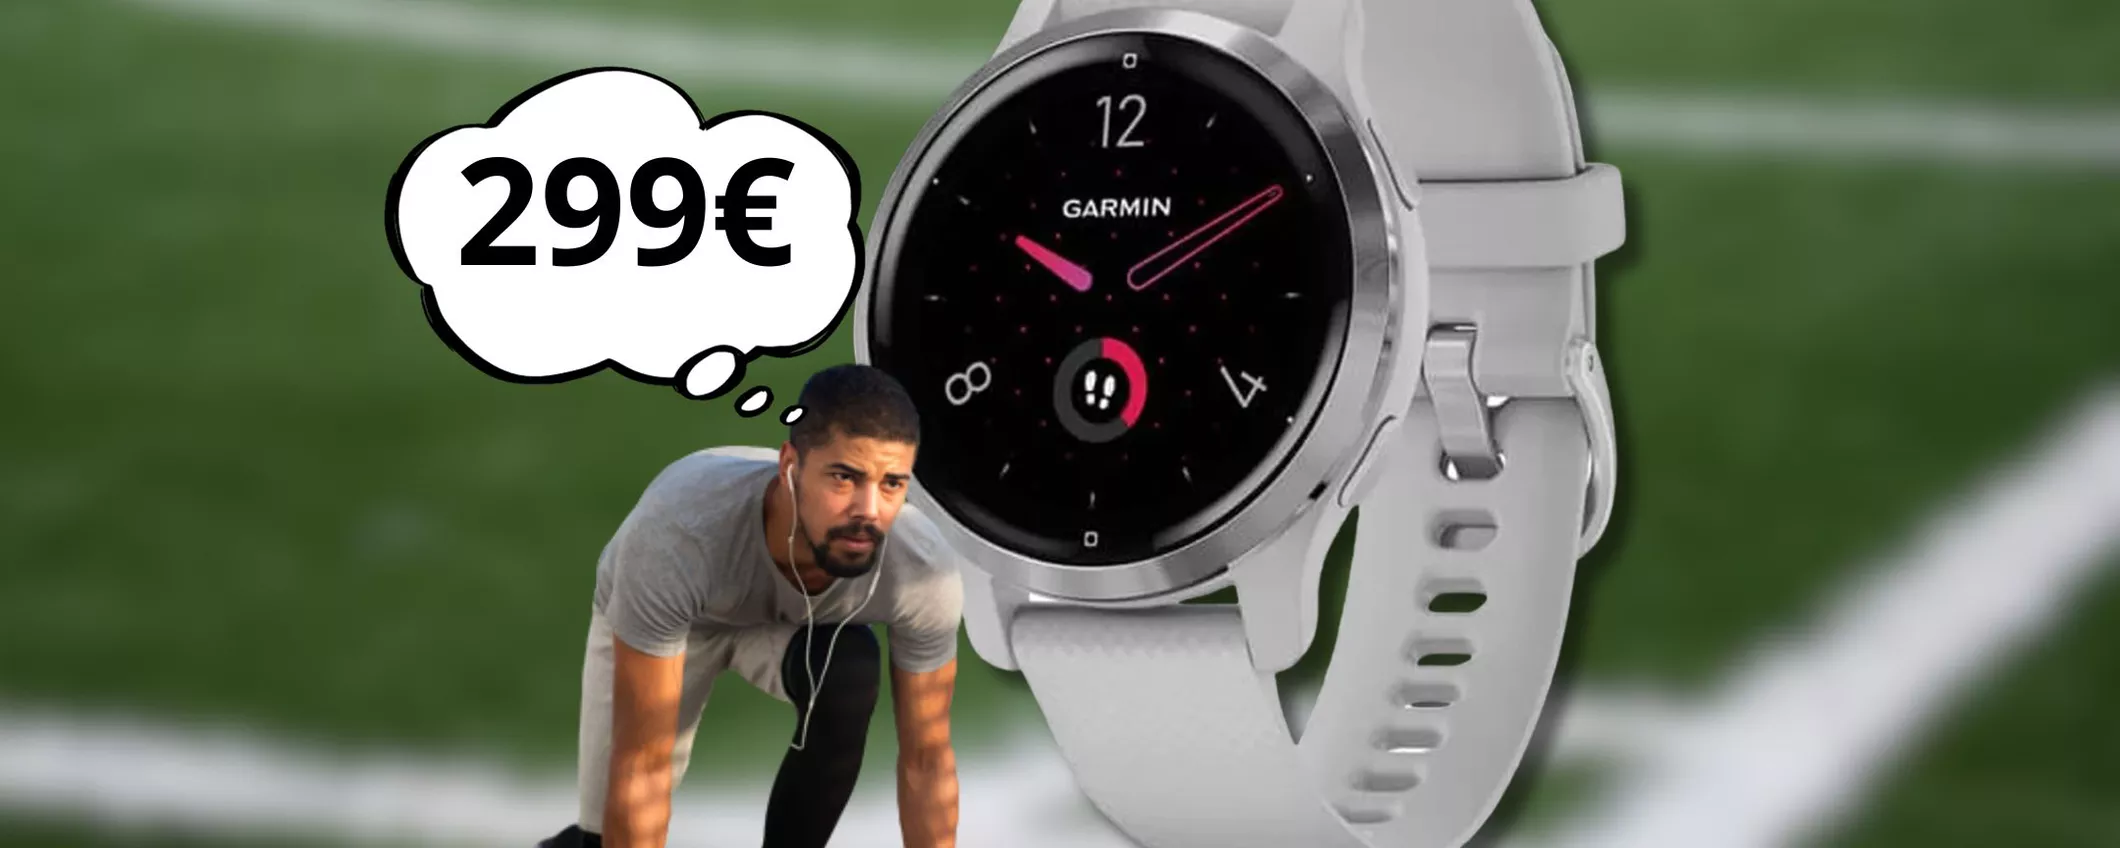 Non è un semplice smartwatch: Garmin consente anche di pagare velocemente e senza contanti! Ora in OFFERTA